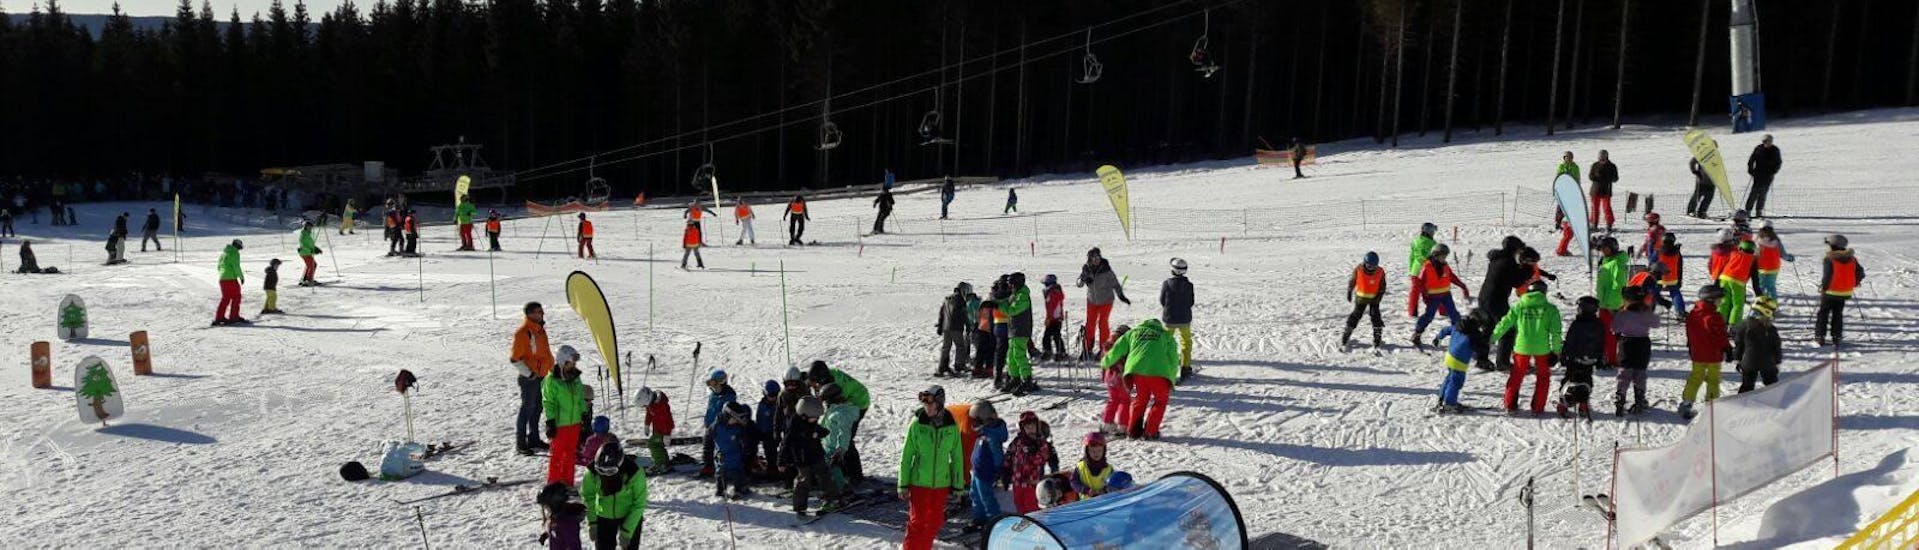 Clases de esquí para niños a partir de 9 años para debutantes.